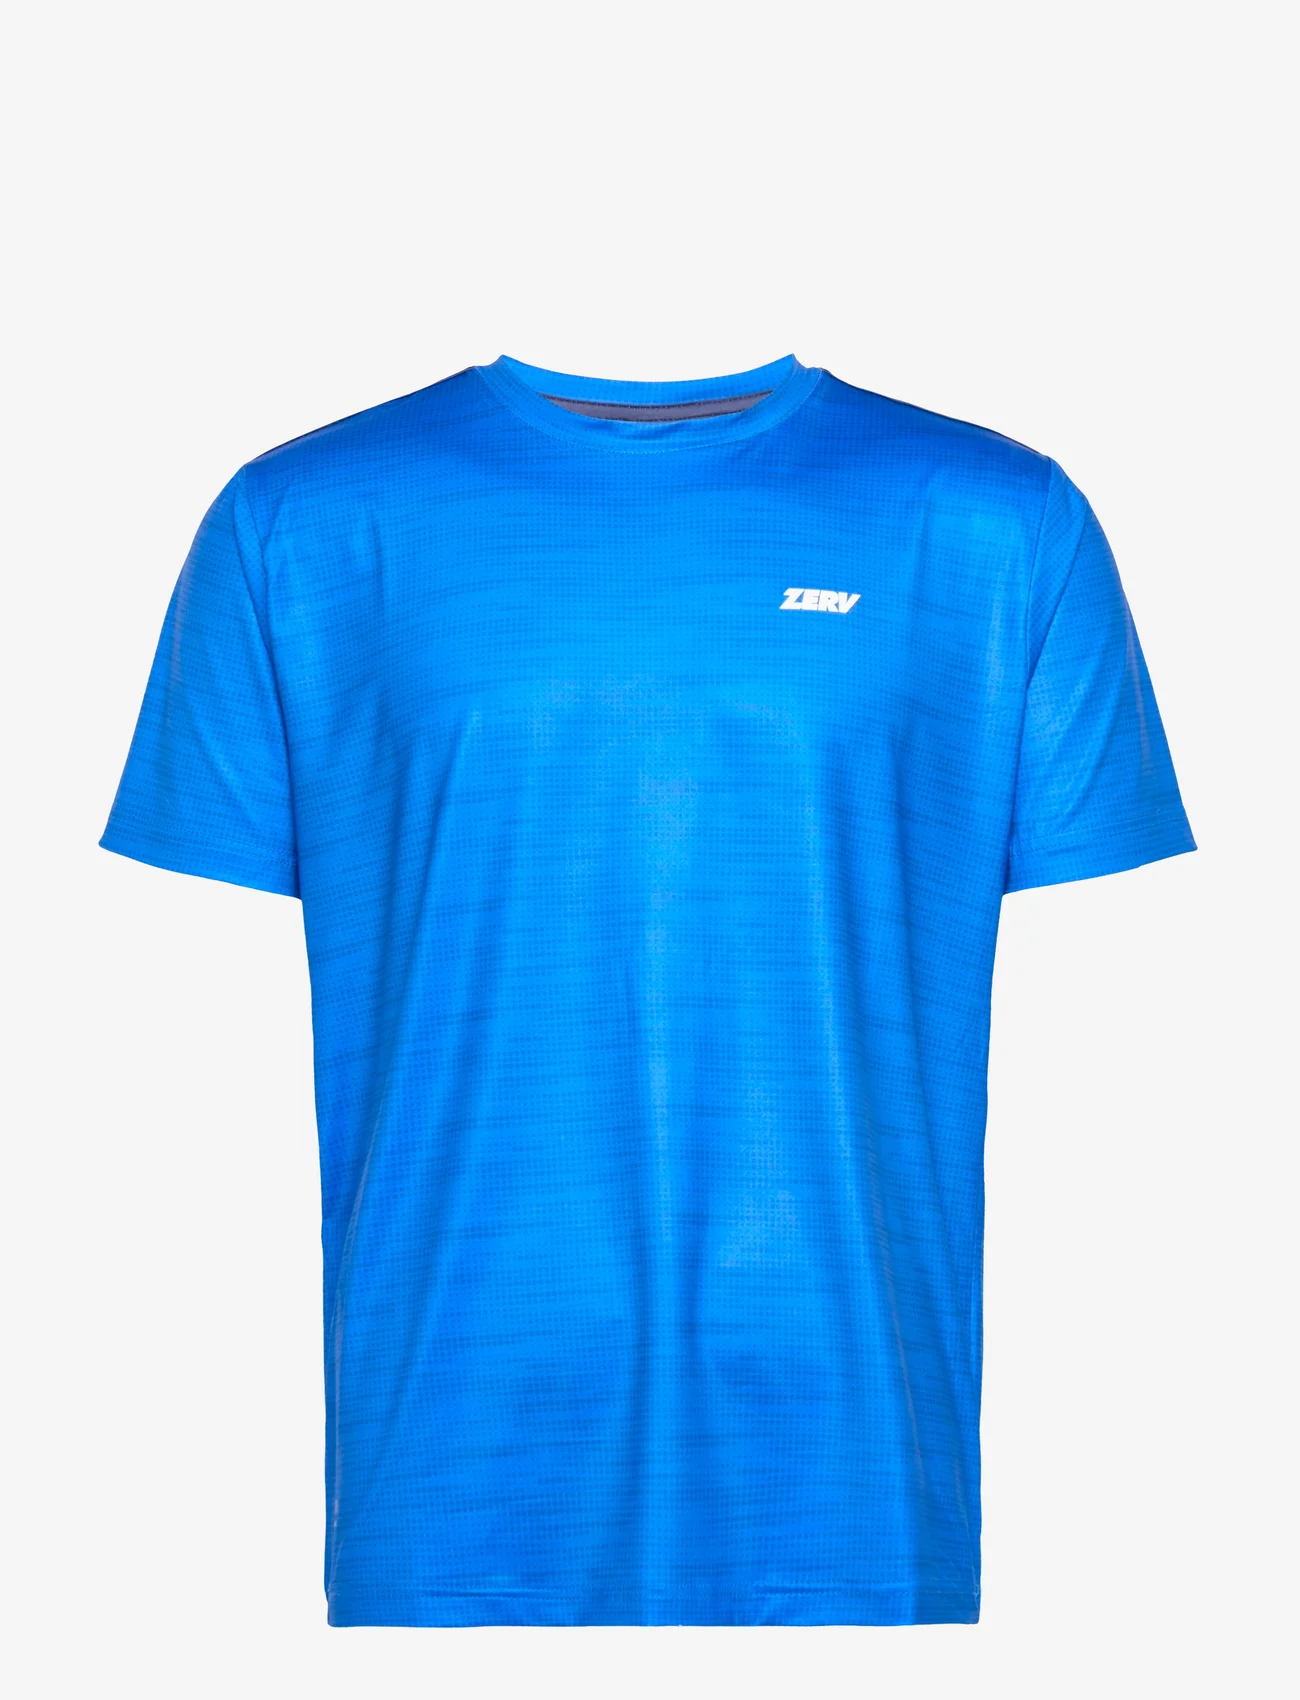 Zerv - ZERV Seattle T-Shirt - mažiausios kainos - blue - 0